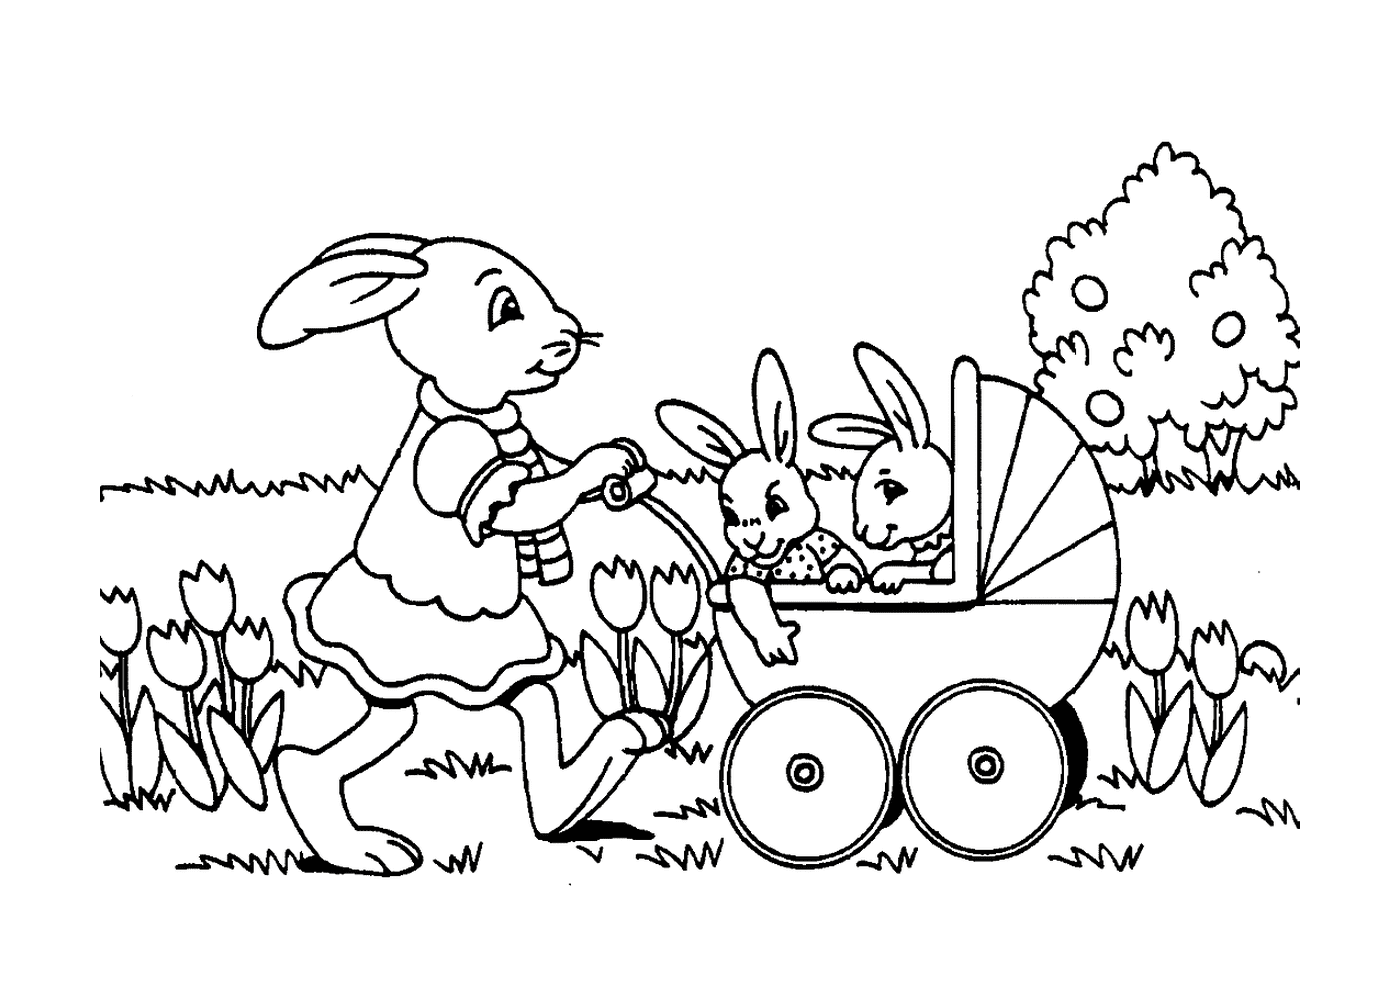  An Easter rabbit pushing a stroller 